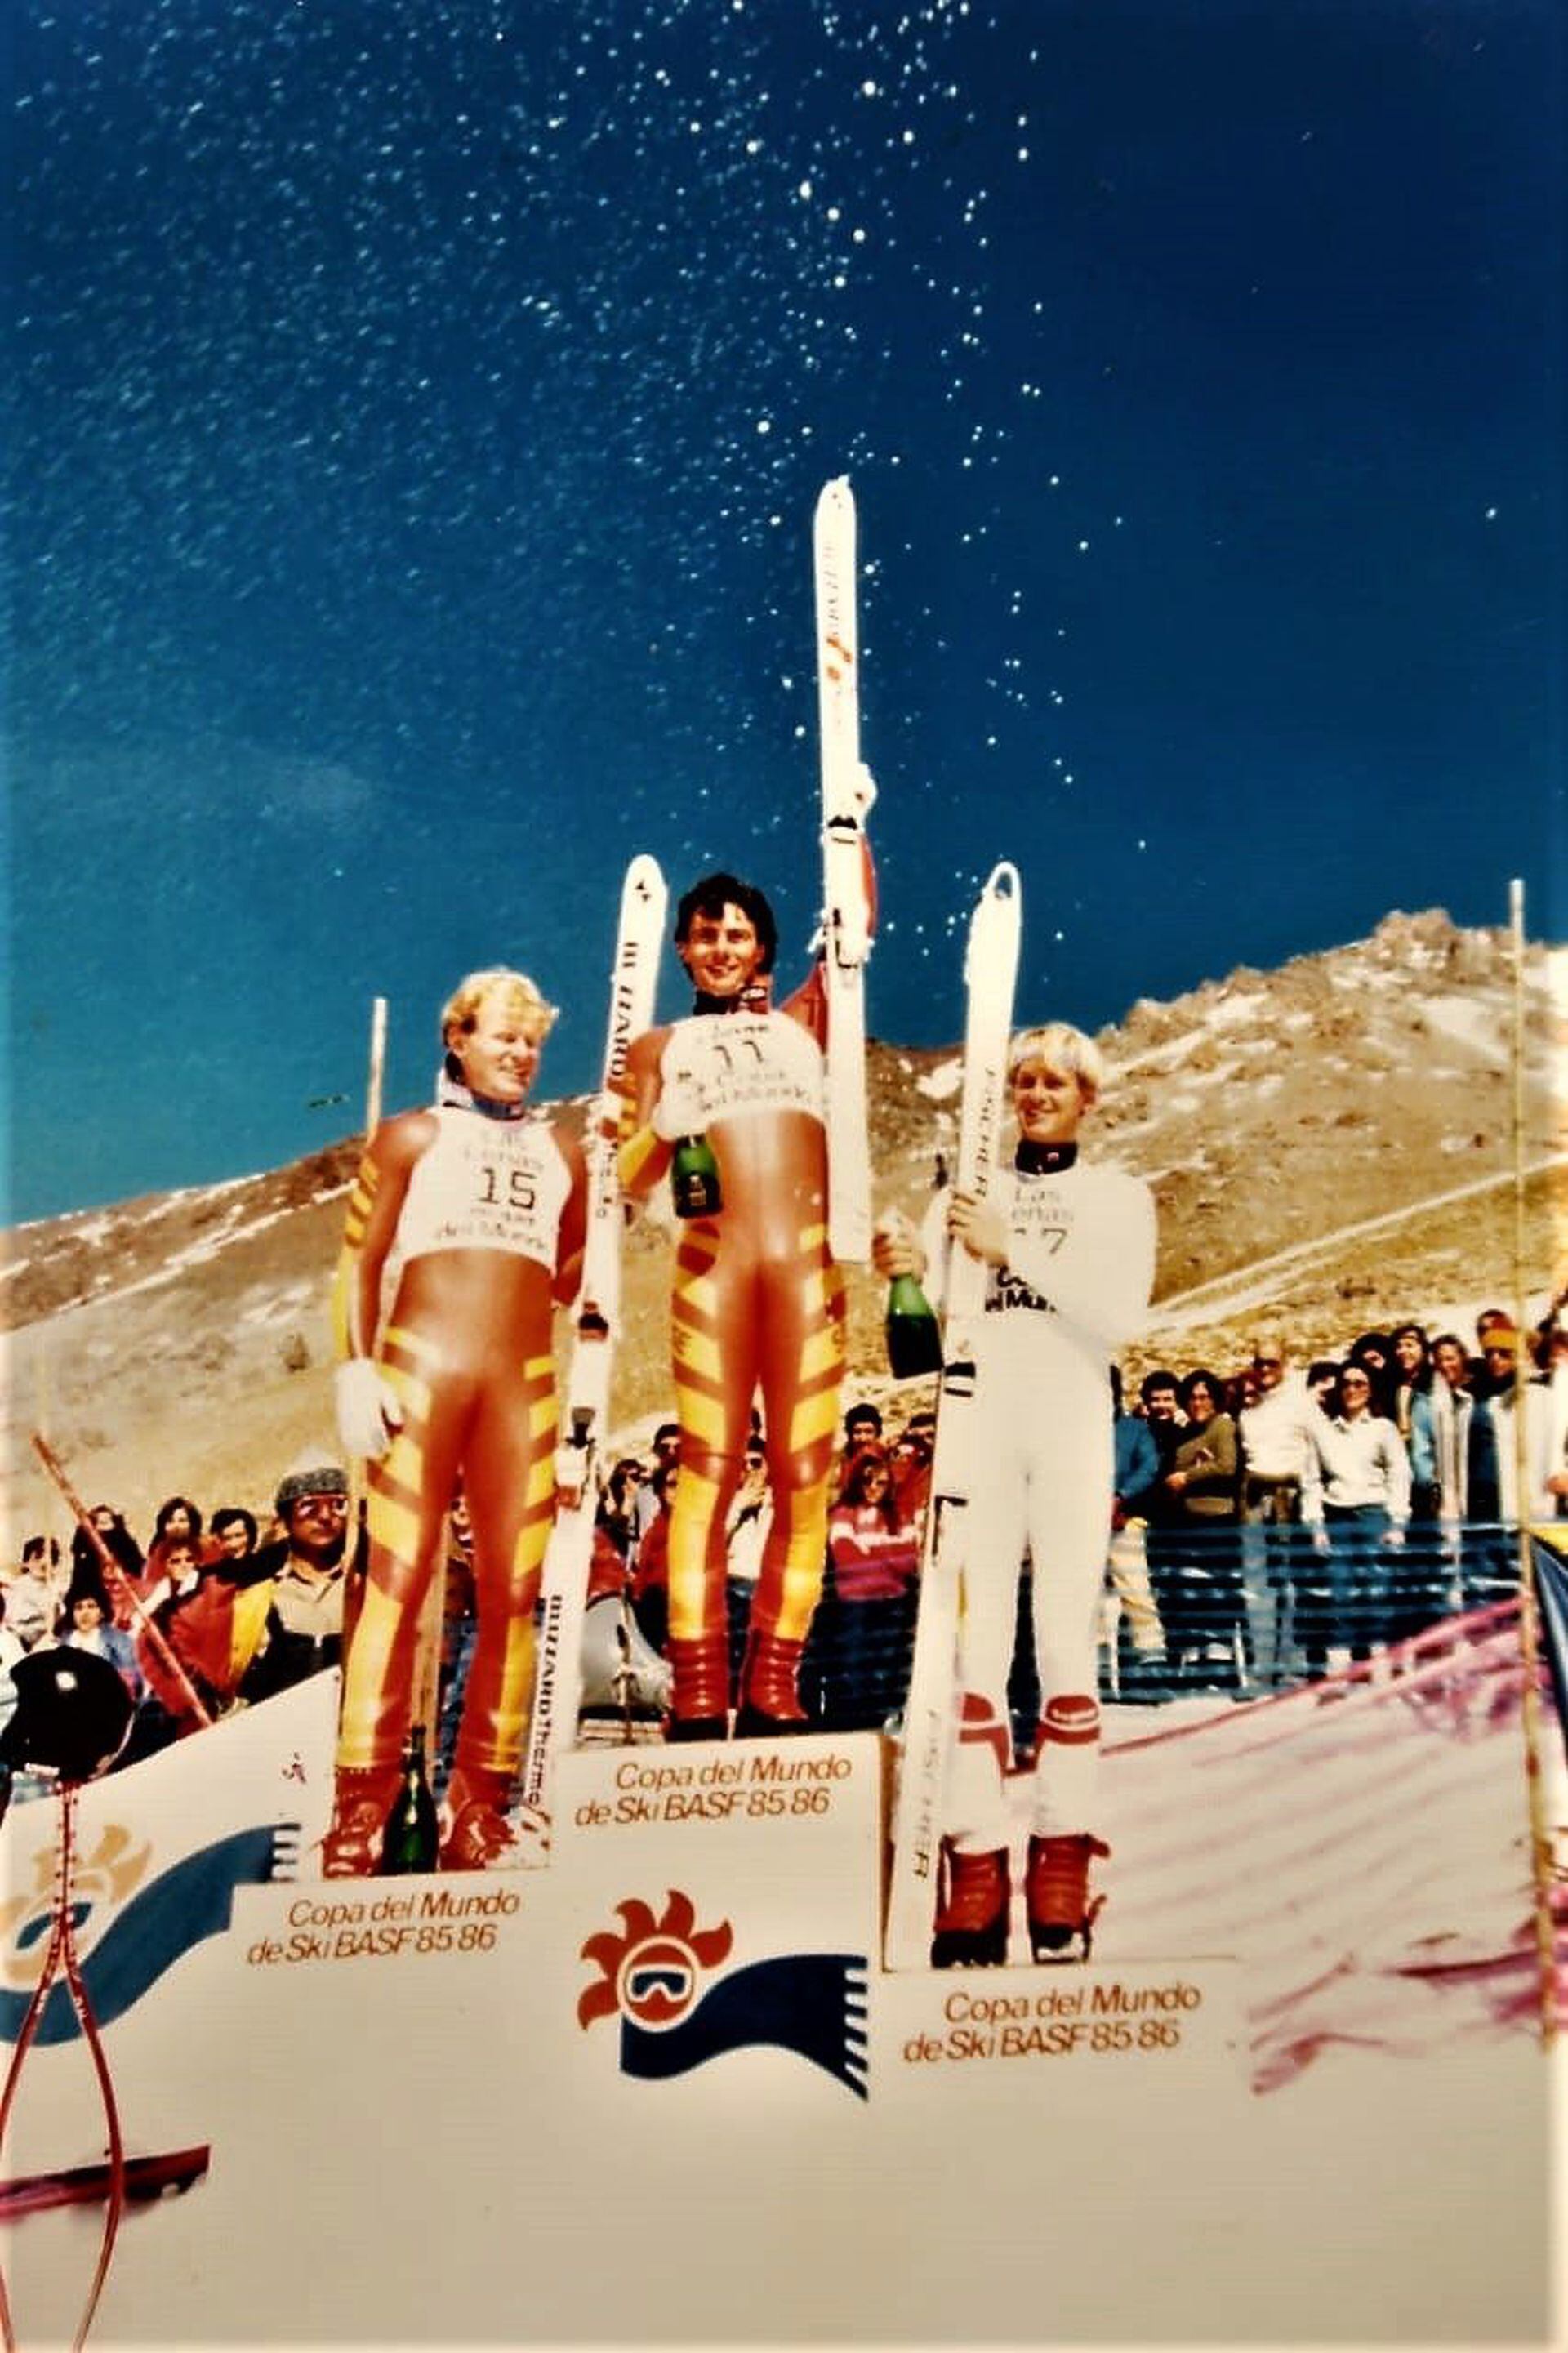 Un encuentro casual entre Tito Lowenstein y Serge Lang, ,presidente de la Copa del Mundo, en Basilea, derivó en un hito para el deporte argentino: en 1985, la competencia de esquí alpino más importante del planeta se disputó en Las Leñas.